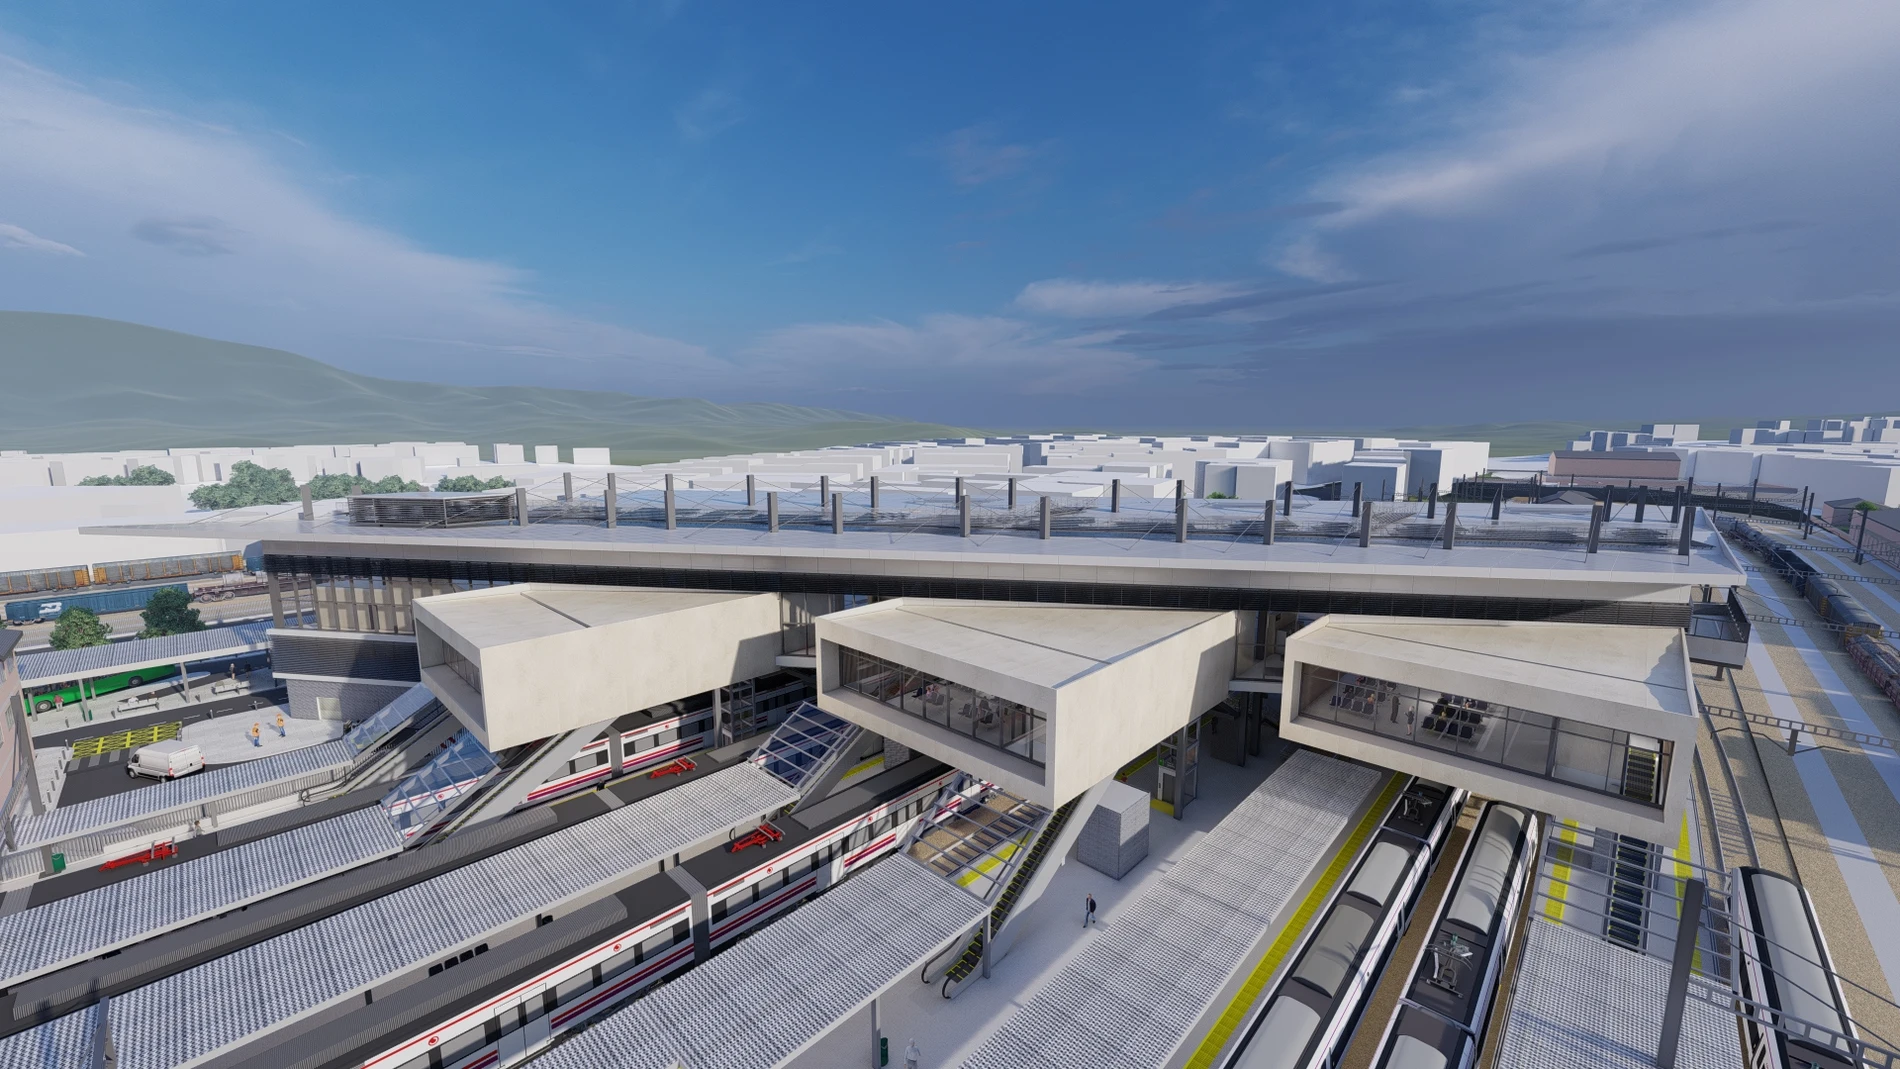 OHLA construirá la nueva estación de tren de Irún